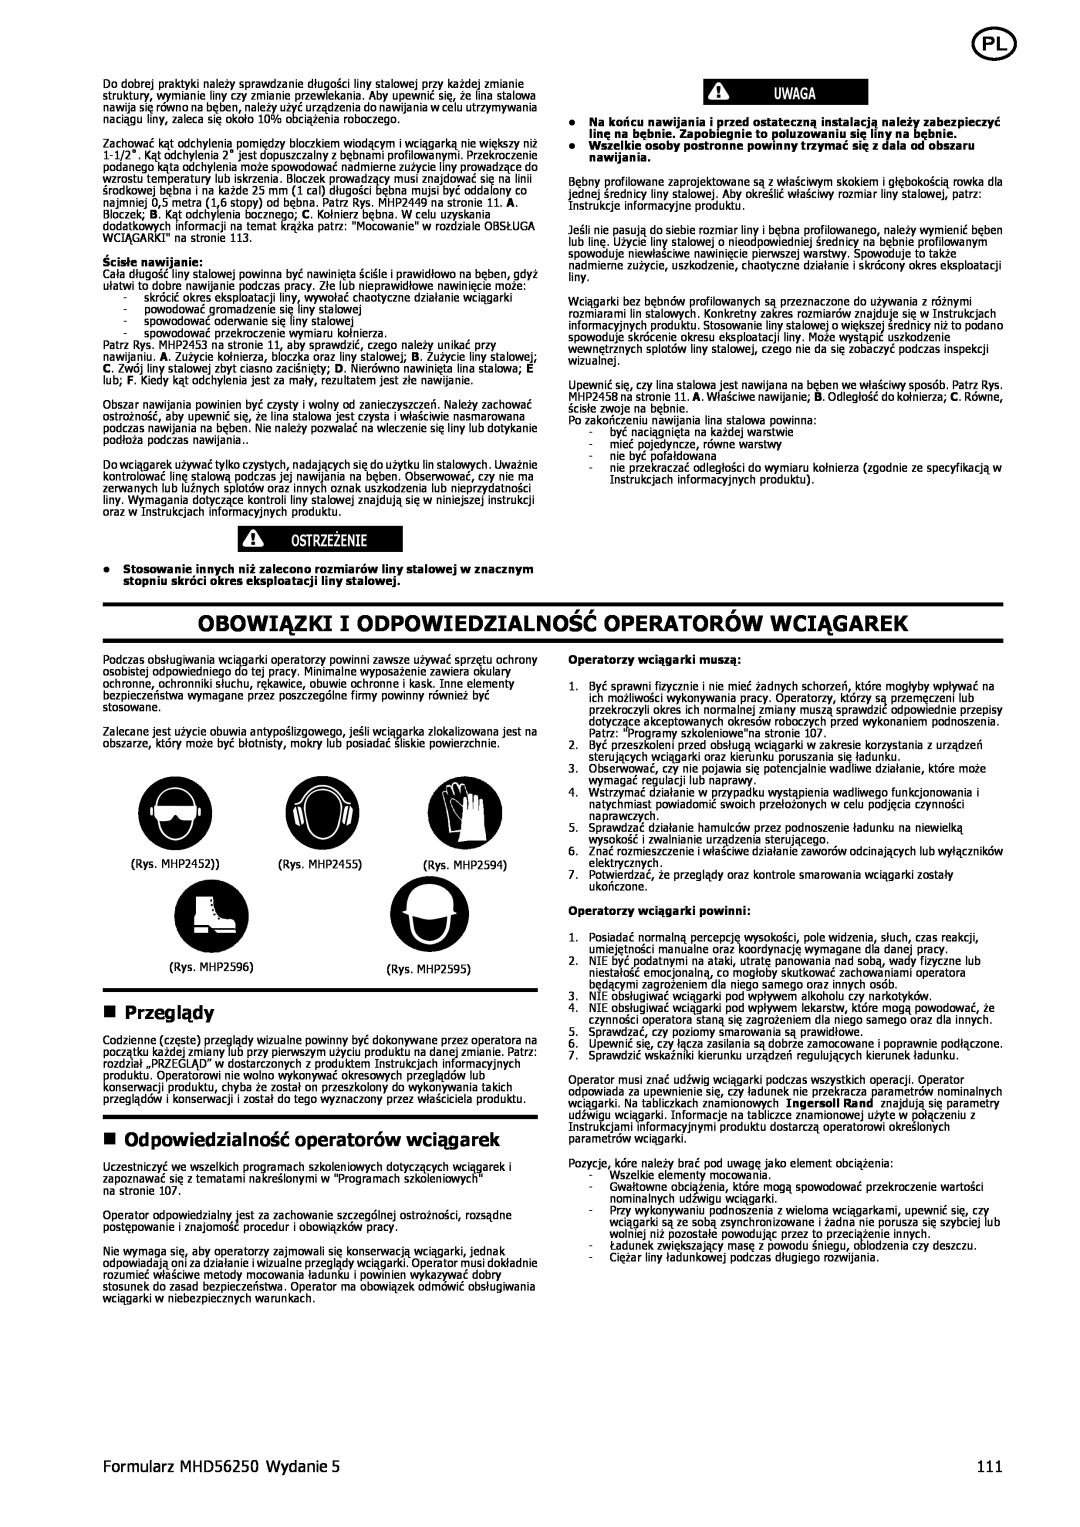 Ingersoll-Rand Obowiązki I Odpowiedzialność Operatorów Wciągarek, n Przeglądy, Formularz MHD56250 Wydanie, Ostrzeżenie 